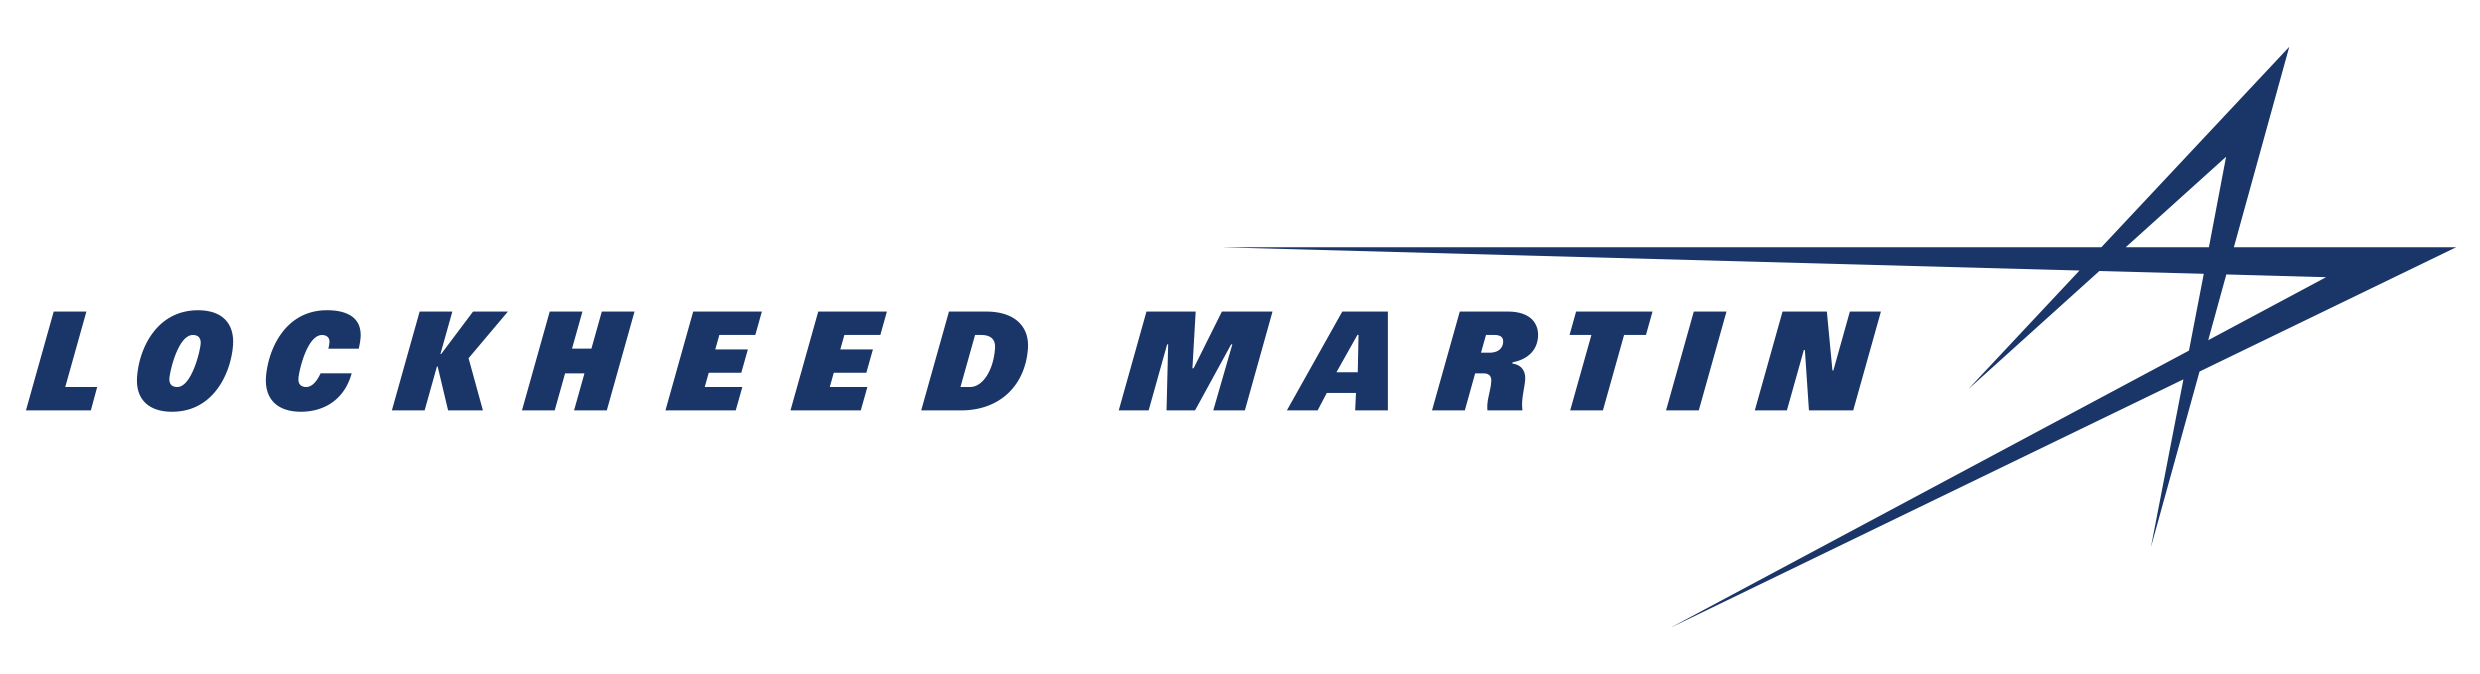 Lockheed Martin Star Logo - Lockheed Martin Corporation | Lockheed Martin